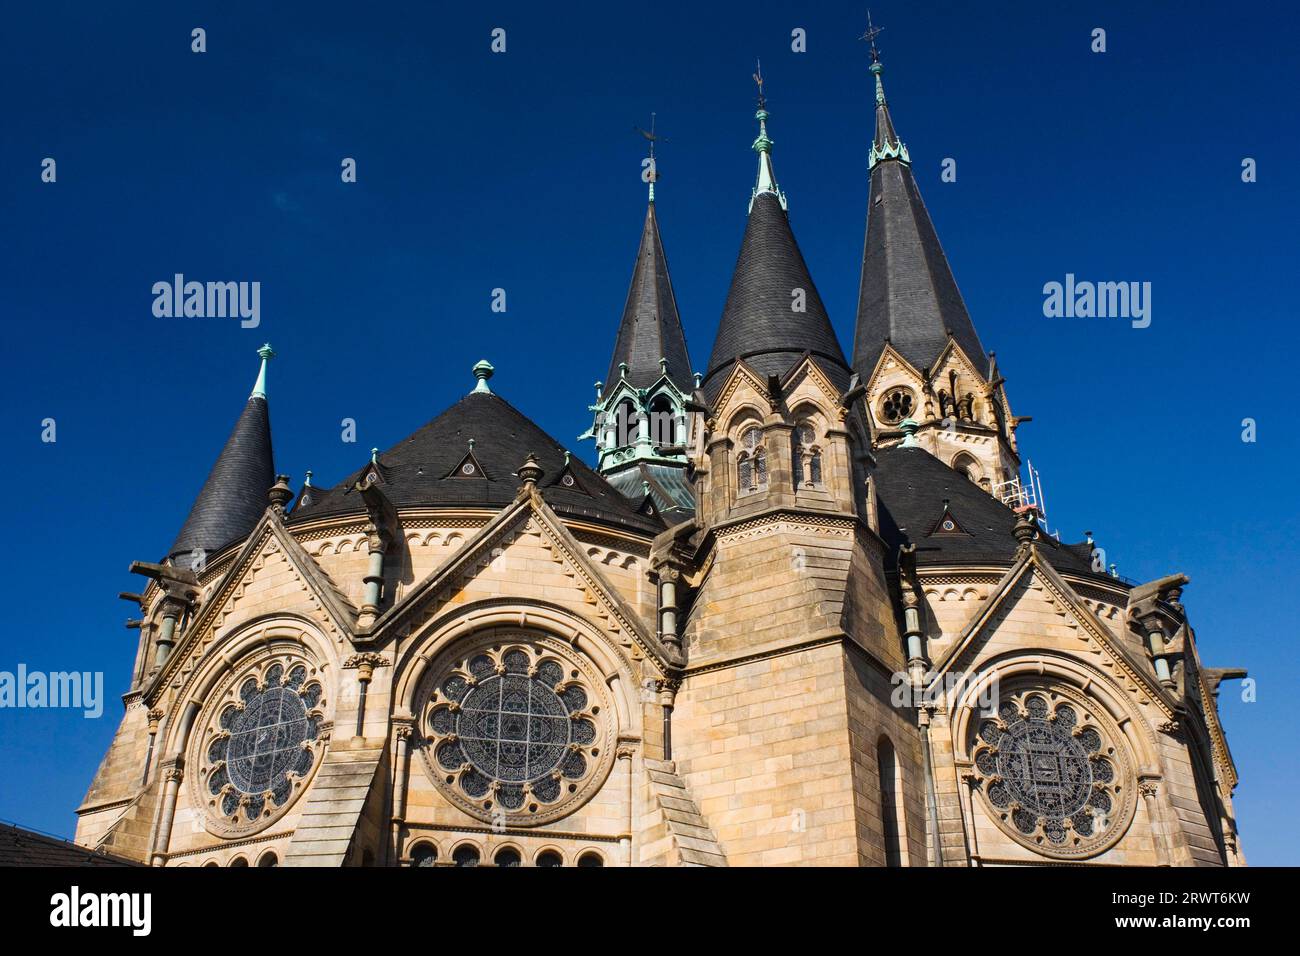 La chiesa ad anello fu la prima chiesa del programma Wiesbaden, che dominò l'architettura della chiesa fino al 1920, Wies Badenn, Assia, Germania Foto Stock